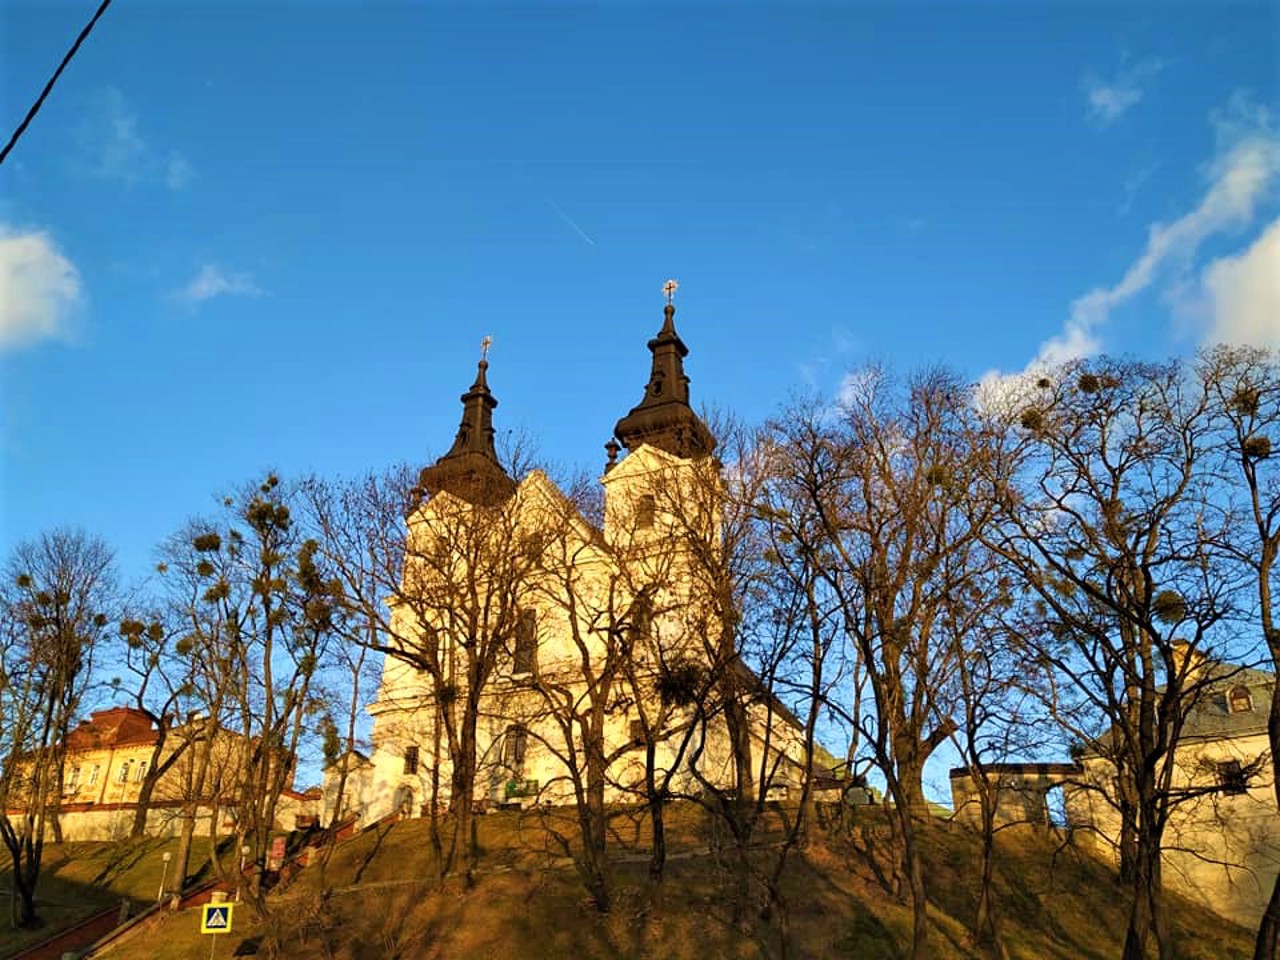 St. Michael's Church (Carmelite), Lviv